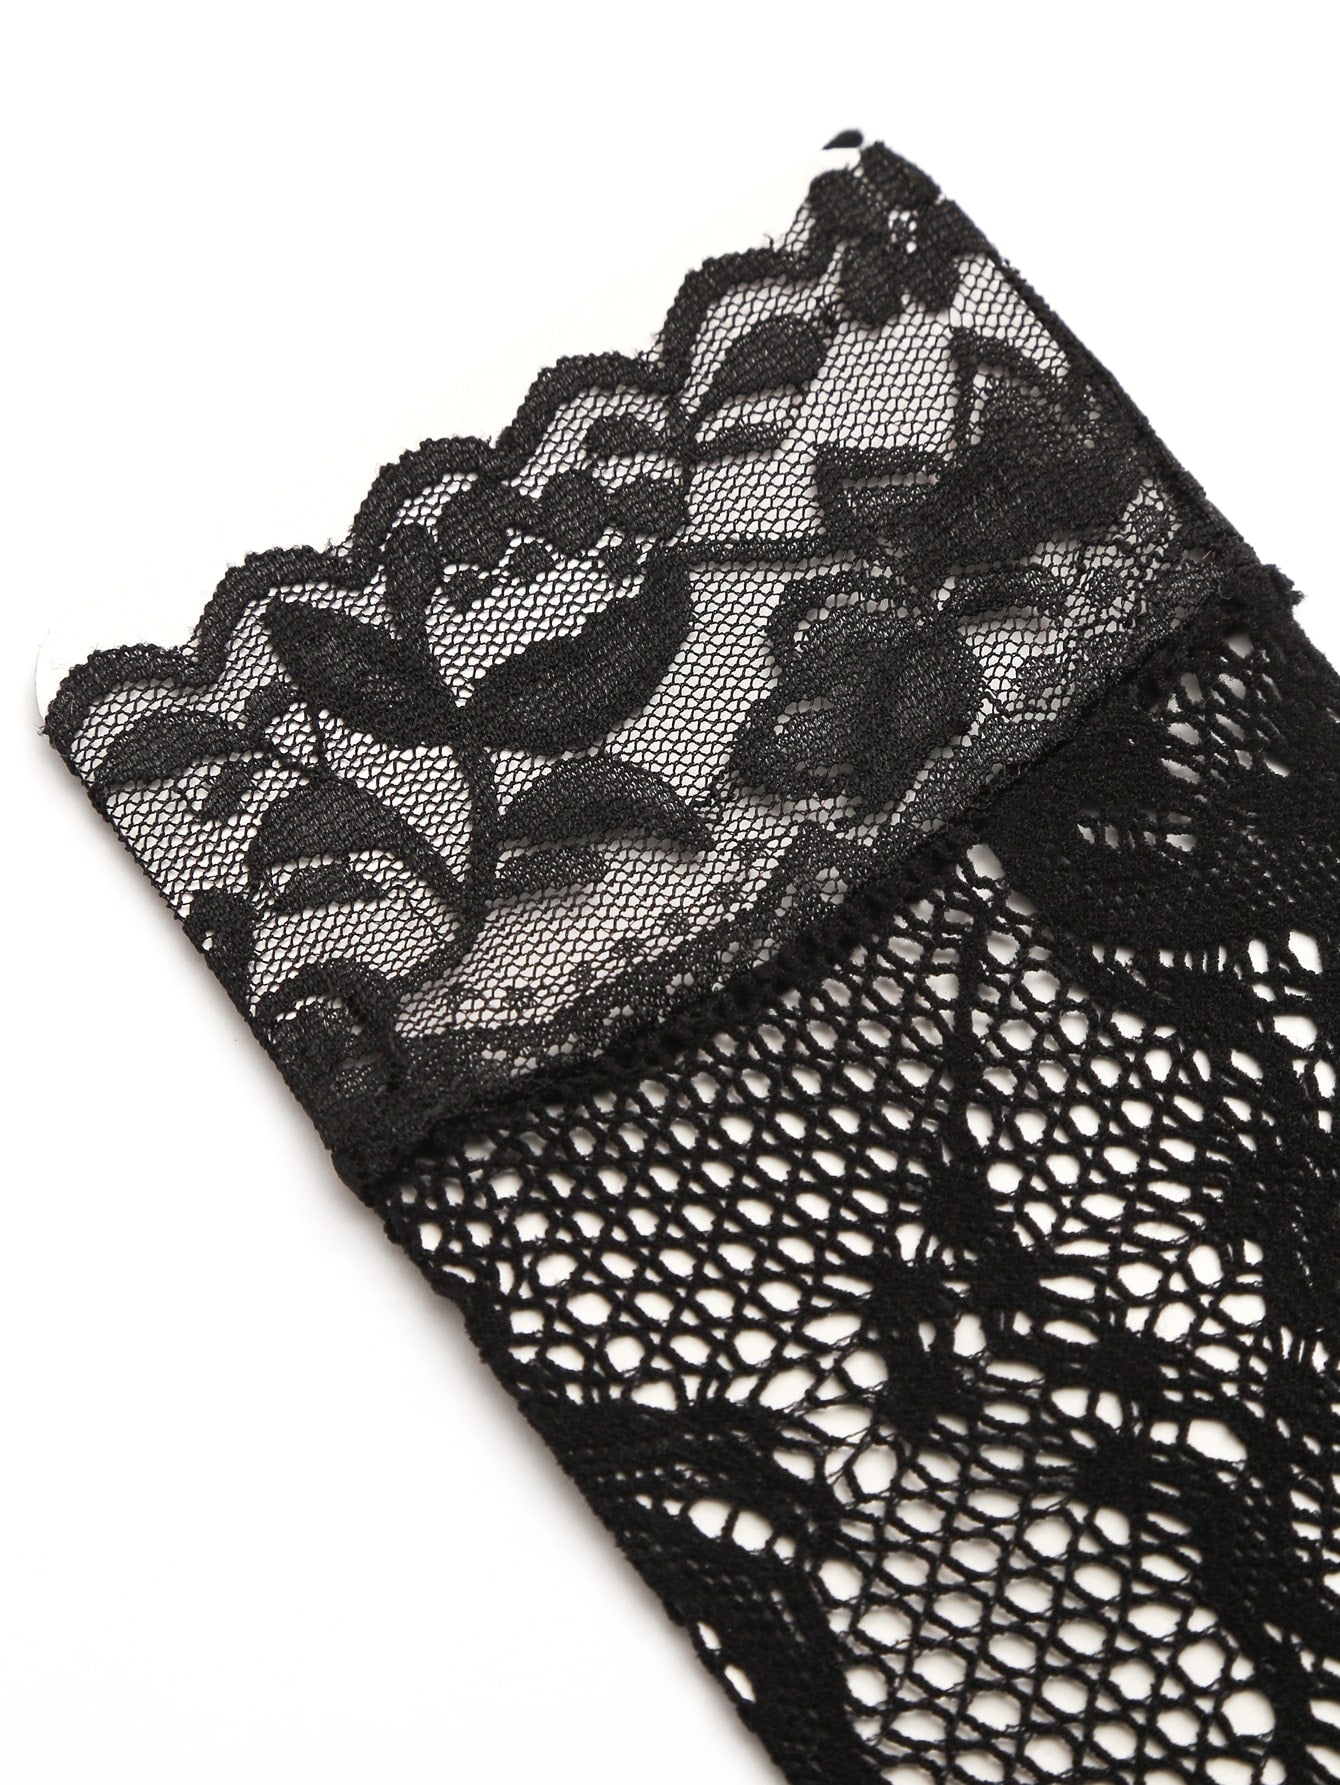 Calcetines sensuales de rejilla con lunares: 5 pares (perfectos debajo de los tobillos para darle un toque vintage)